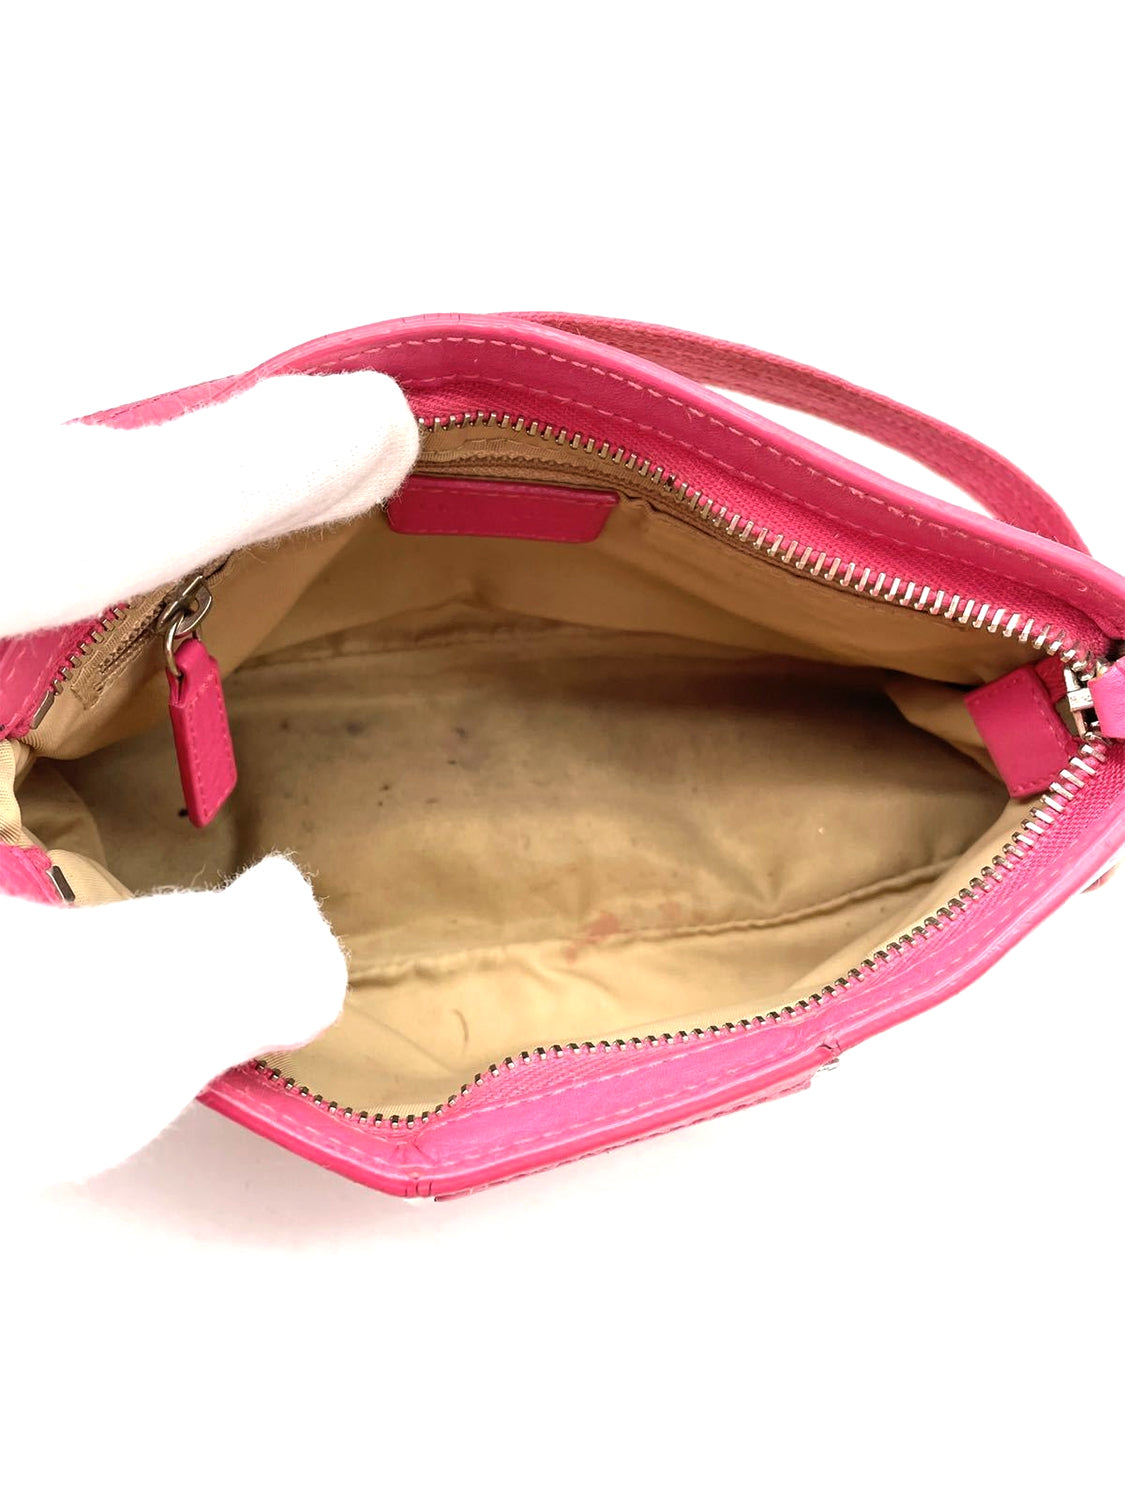 Dior Beauty Pink Makeup Bag Purse Medium Size India | Ubuy